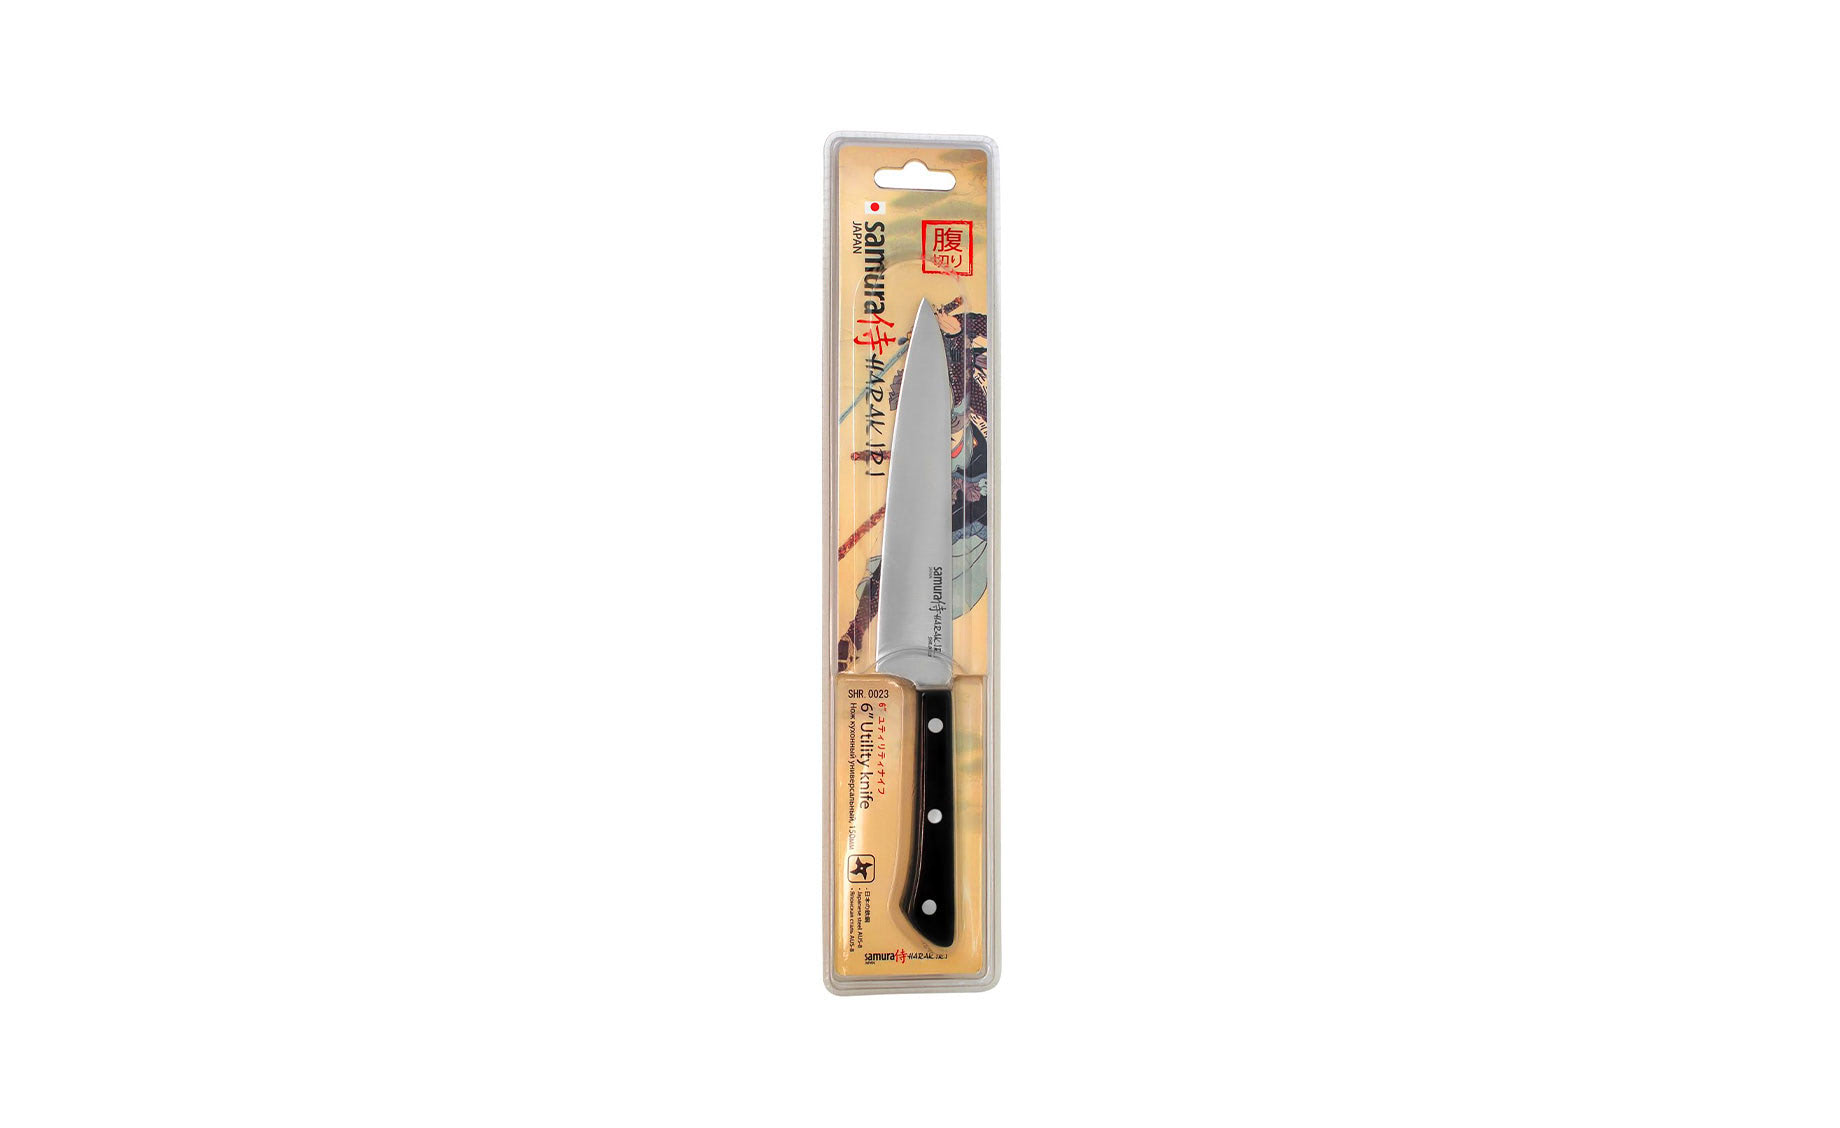 Samura Harakiri Utility nož 15cm